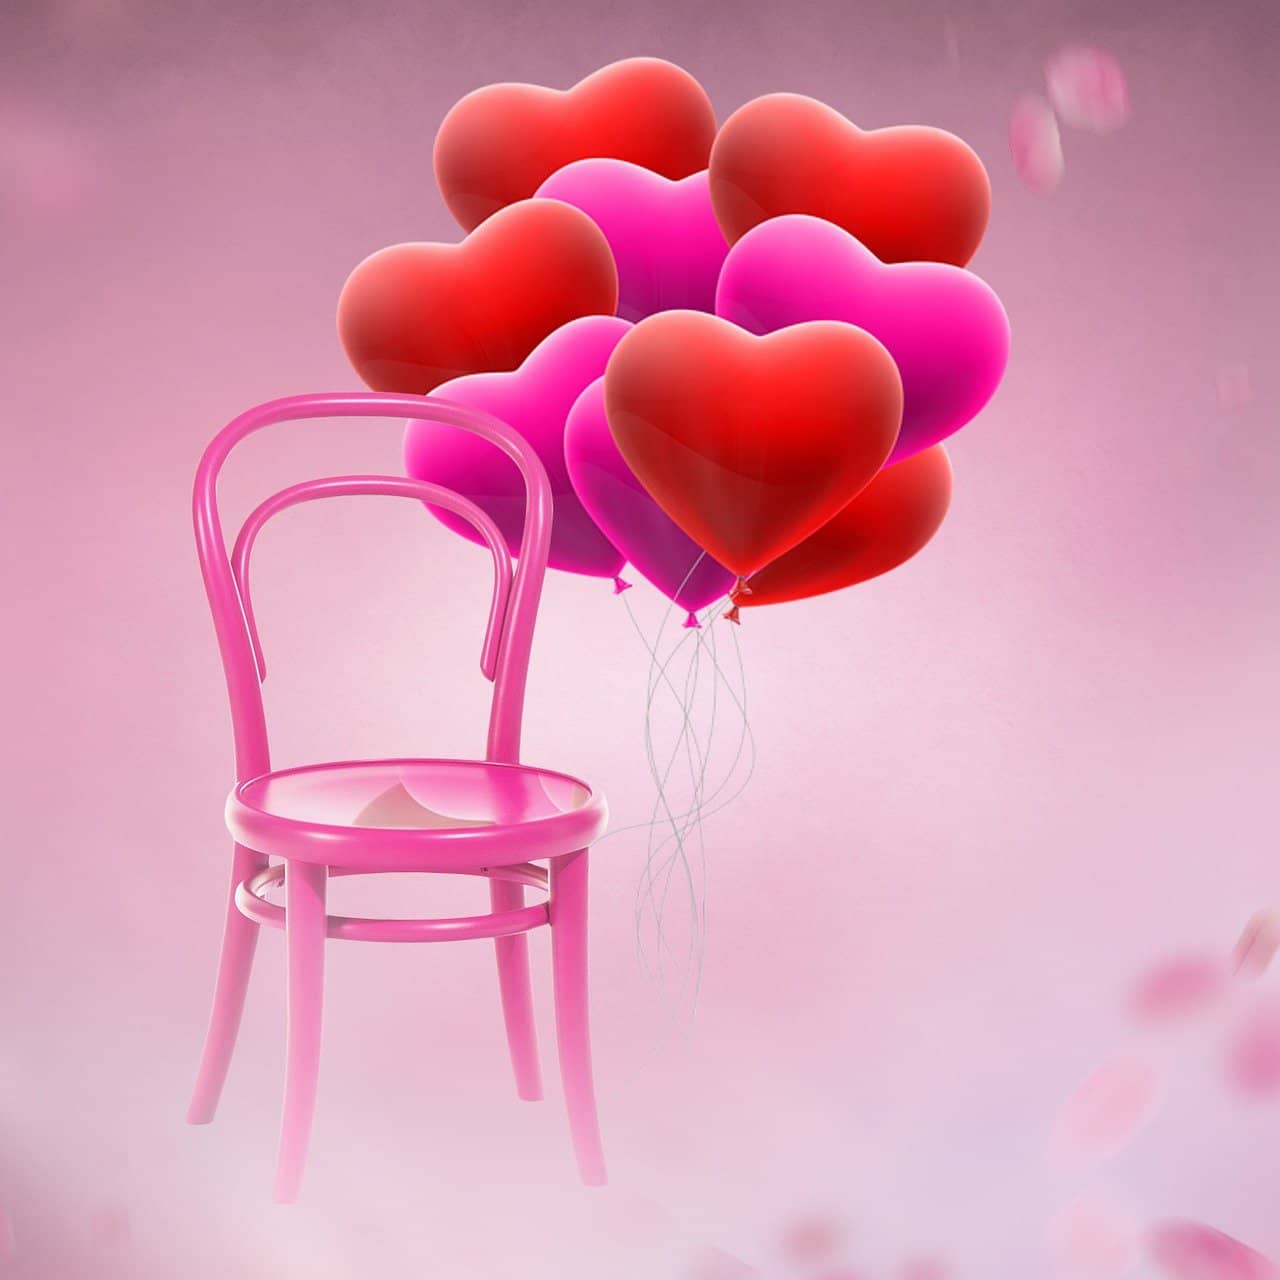 Jaki kolor krzesła wybrać na walentynki dla ukochanej osoby; Co symbolizują poszczególne kolory krzeseł